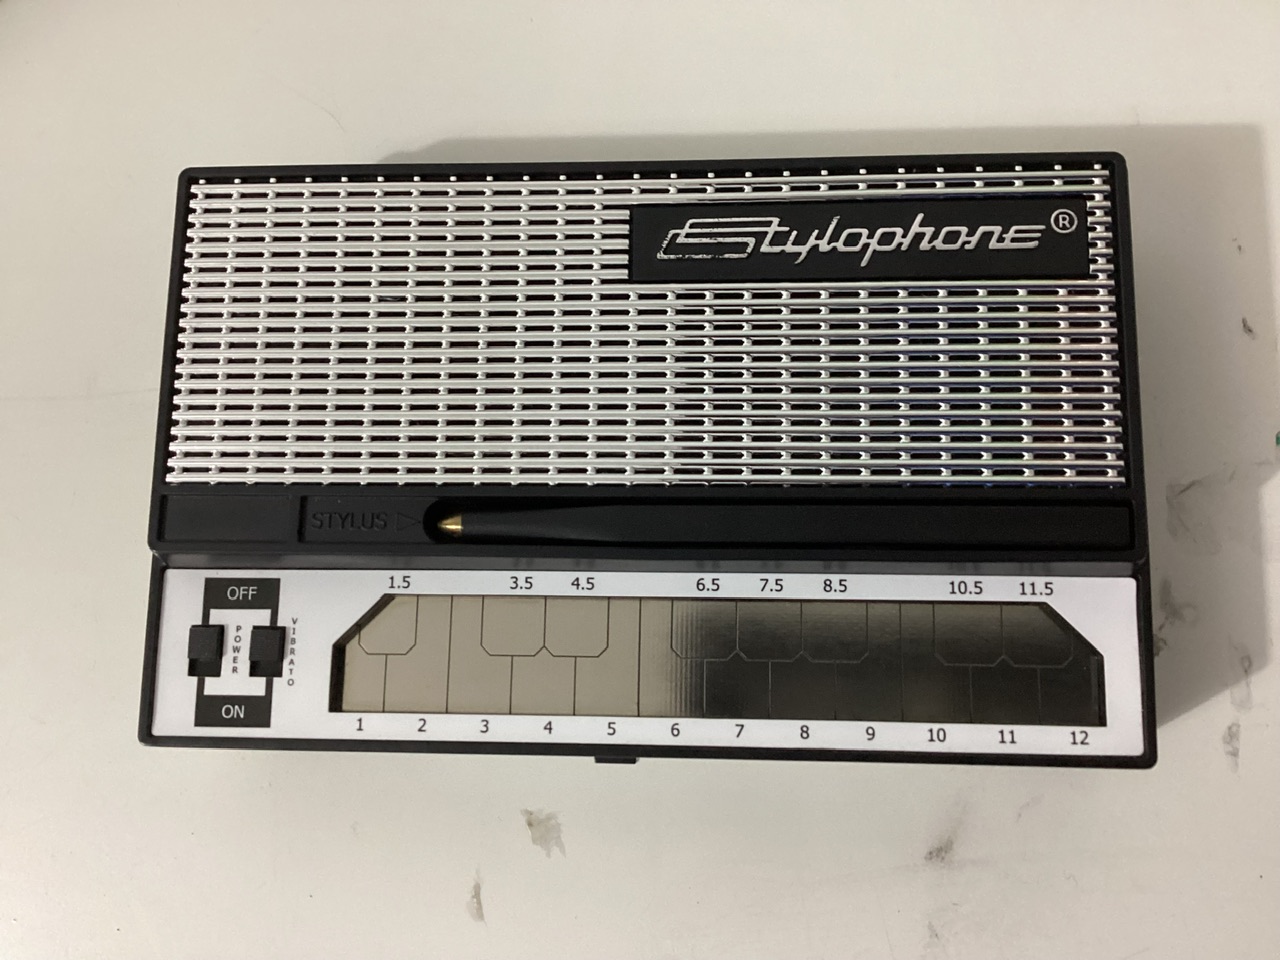 Стилофон купить озон. Ретро-синтезатор Stylophone 350s. Mini Stylophone. Стилофон х-1. Все виды Stylophone.